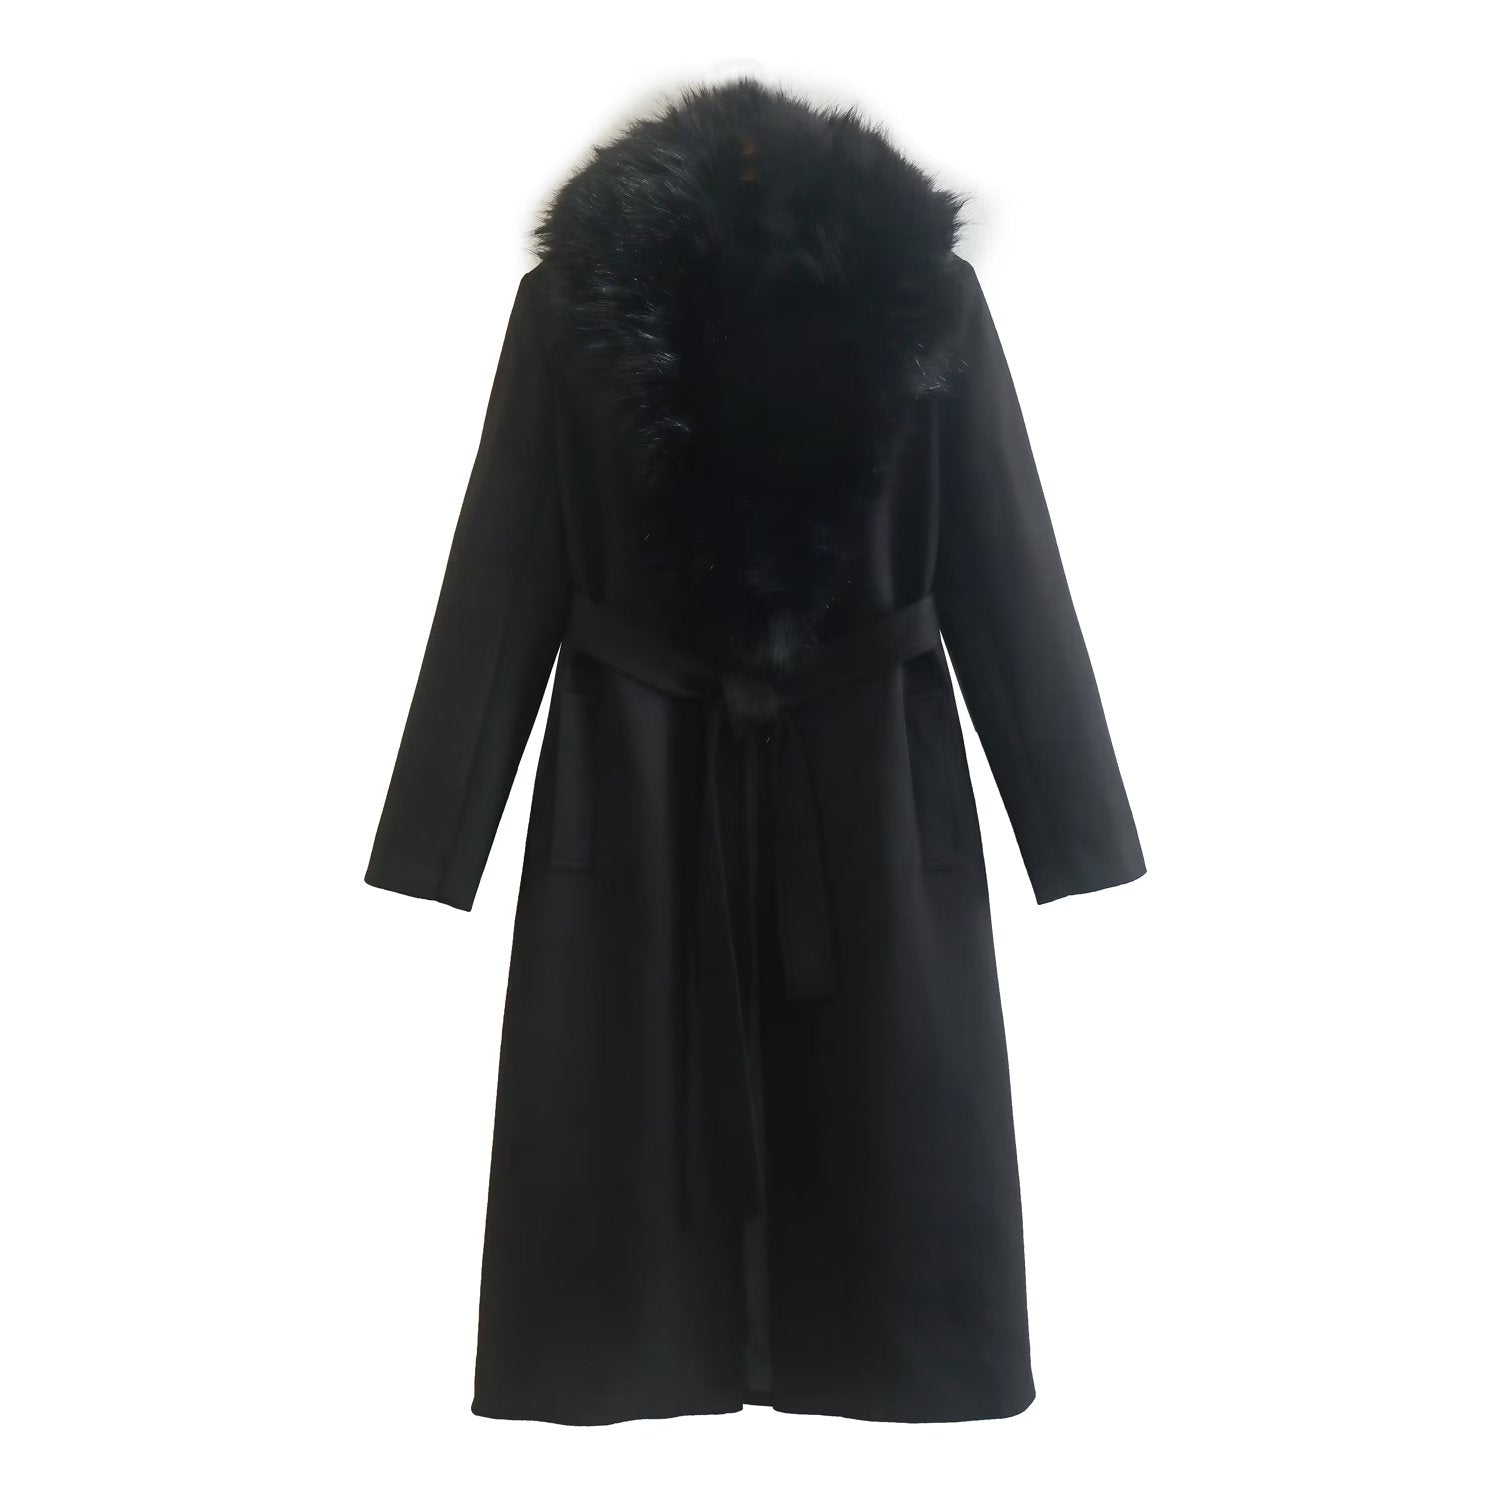 Winter Women Clothing Wind Black Wool Blended Long Overcoat Outerwear